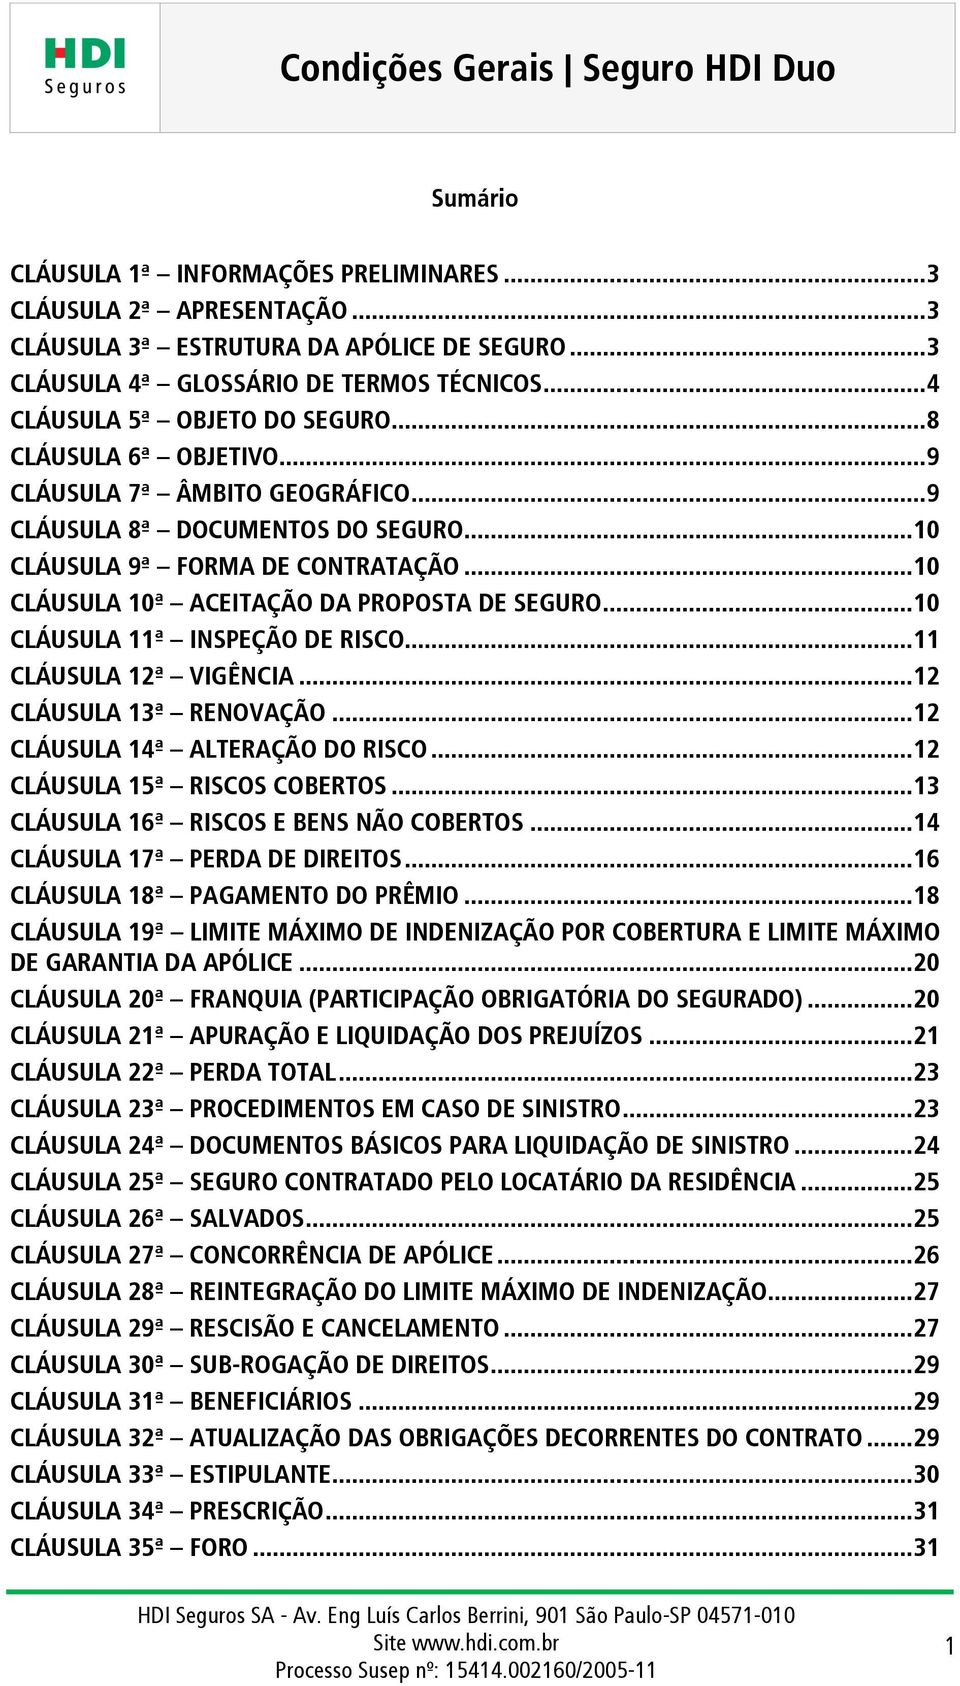 .. 10 CLÁUSULA 10ª ACEITAÇÃO DA PROPOSTA DE SEGURO... 10 CLÁUSULA 11ª INSPEÇÃO DE RISCO... 11 CLÁUSULA 12ª VIGÊNCIA... 12 CLÁUSULA 13ª RENOVAÇÃO... 12 CLÁUSULA 14ª ALTERAÇÃO DO RISCO.